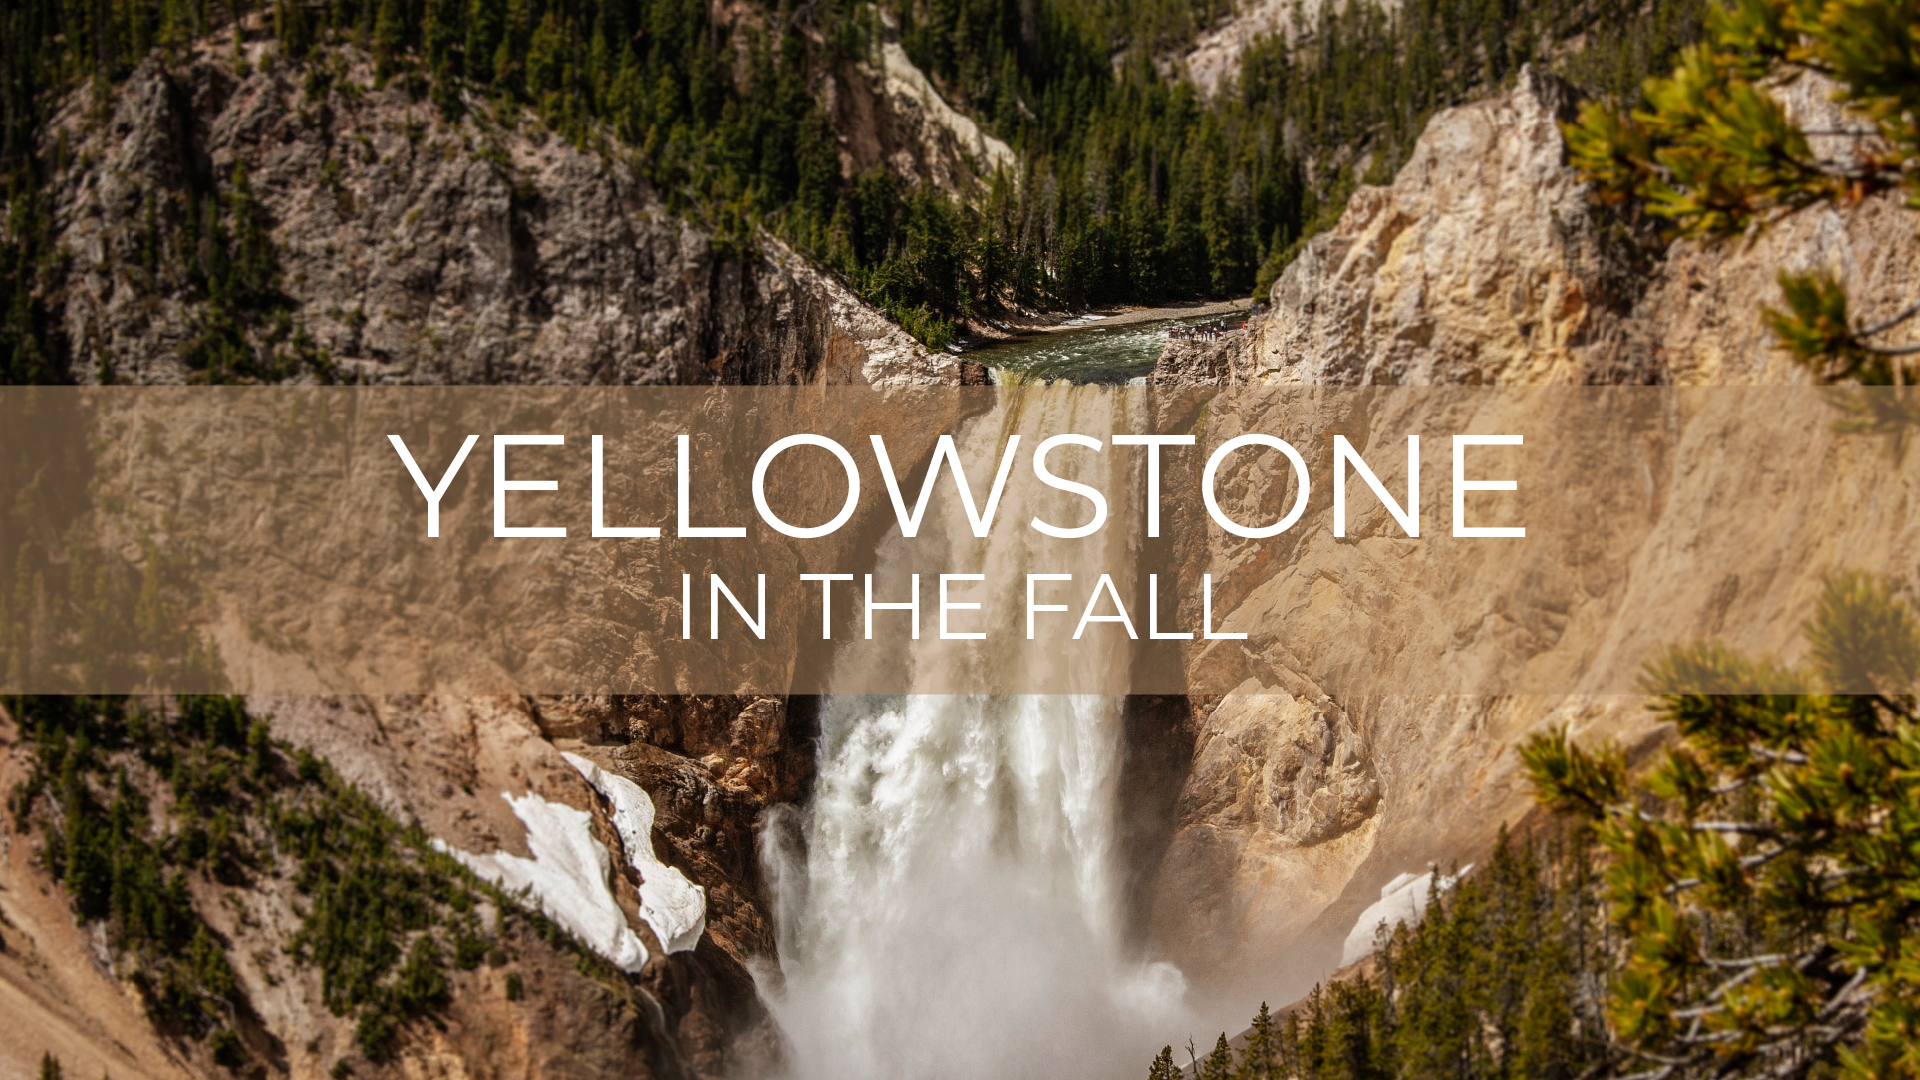 Yellowstone in the Fall